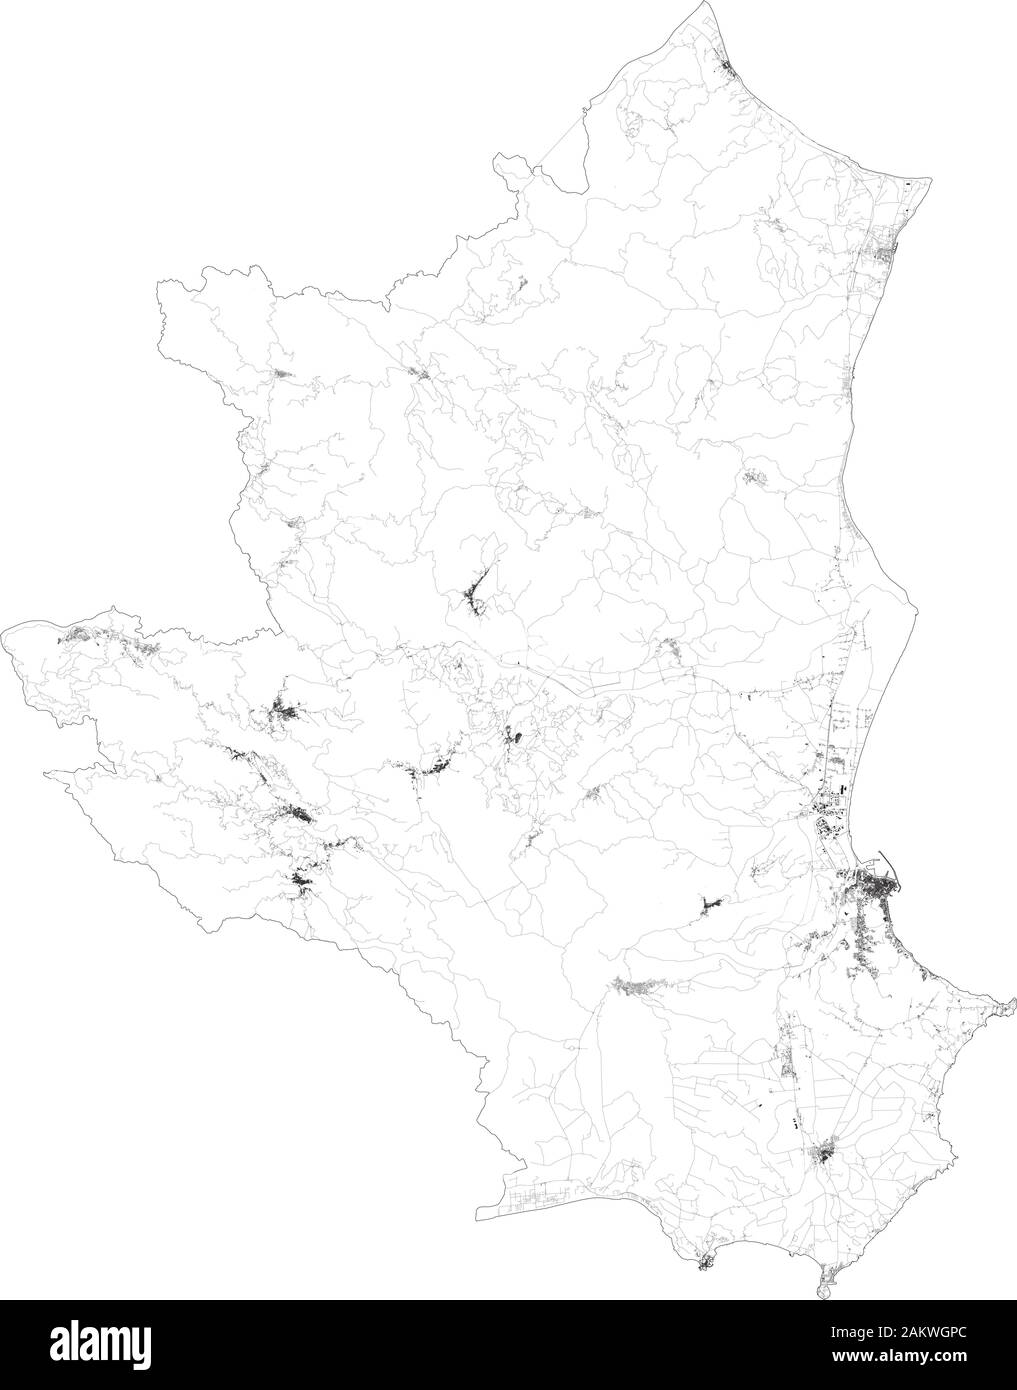 Mappa satellitare della provincia di Crotone città e strade, edifici e strade di collegamento delle aree circostanti. Regione Calabria, Italia. Mappa stradale Illustrazione Vettoriale